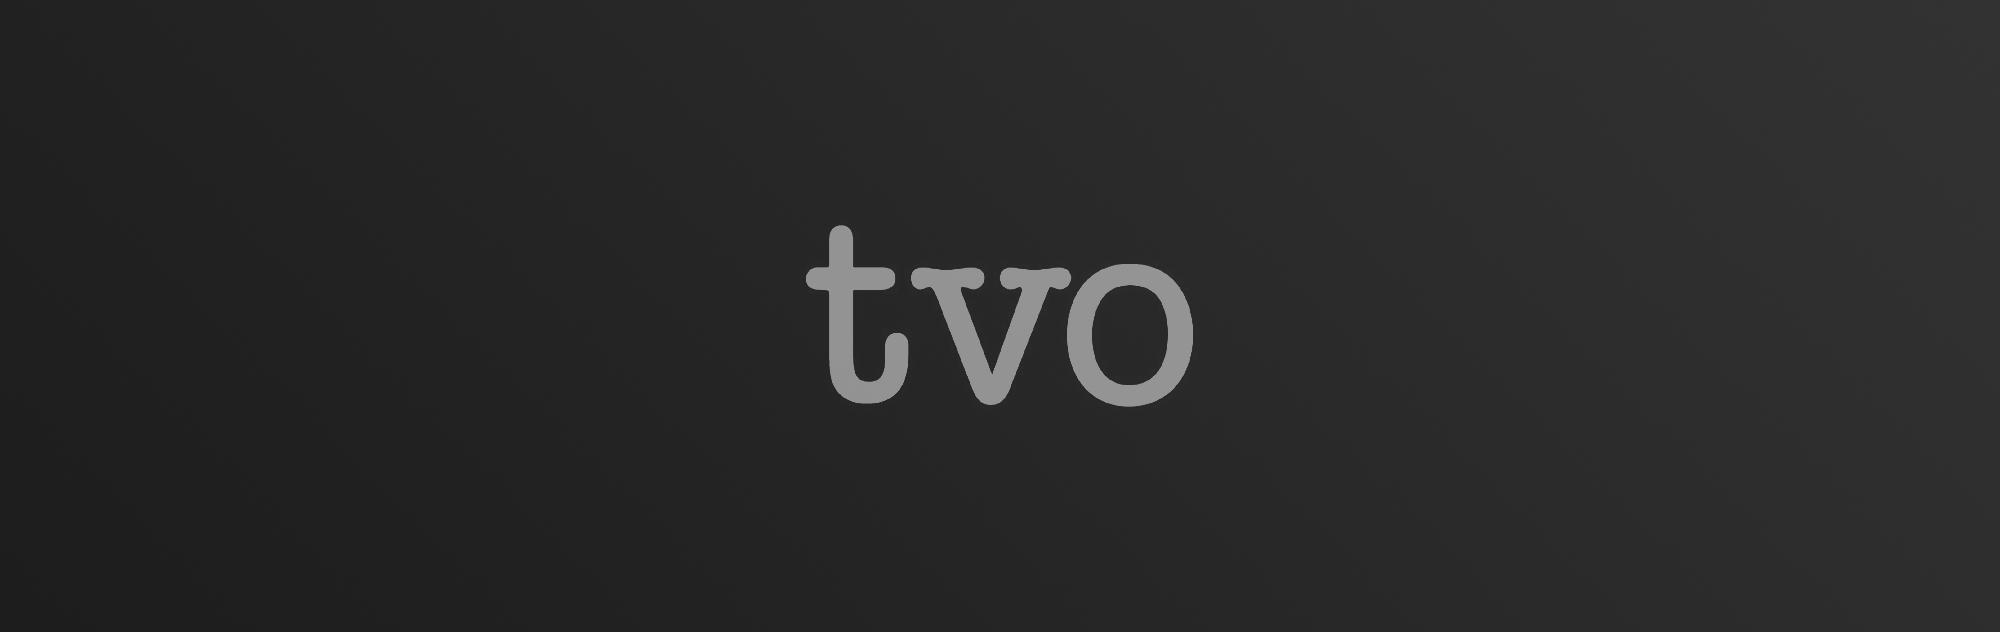 TVO logo on dark gradient background